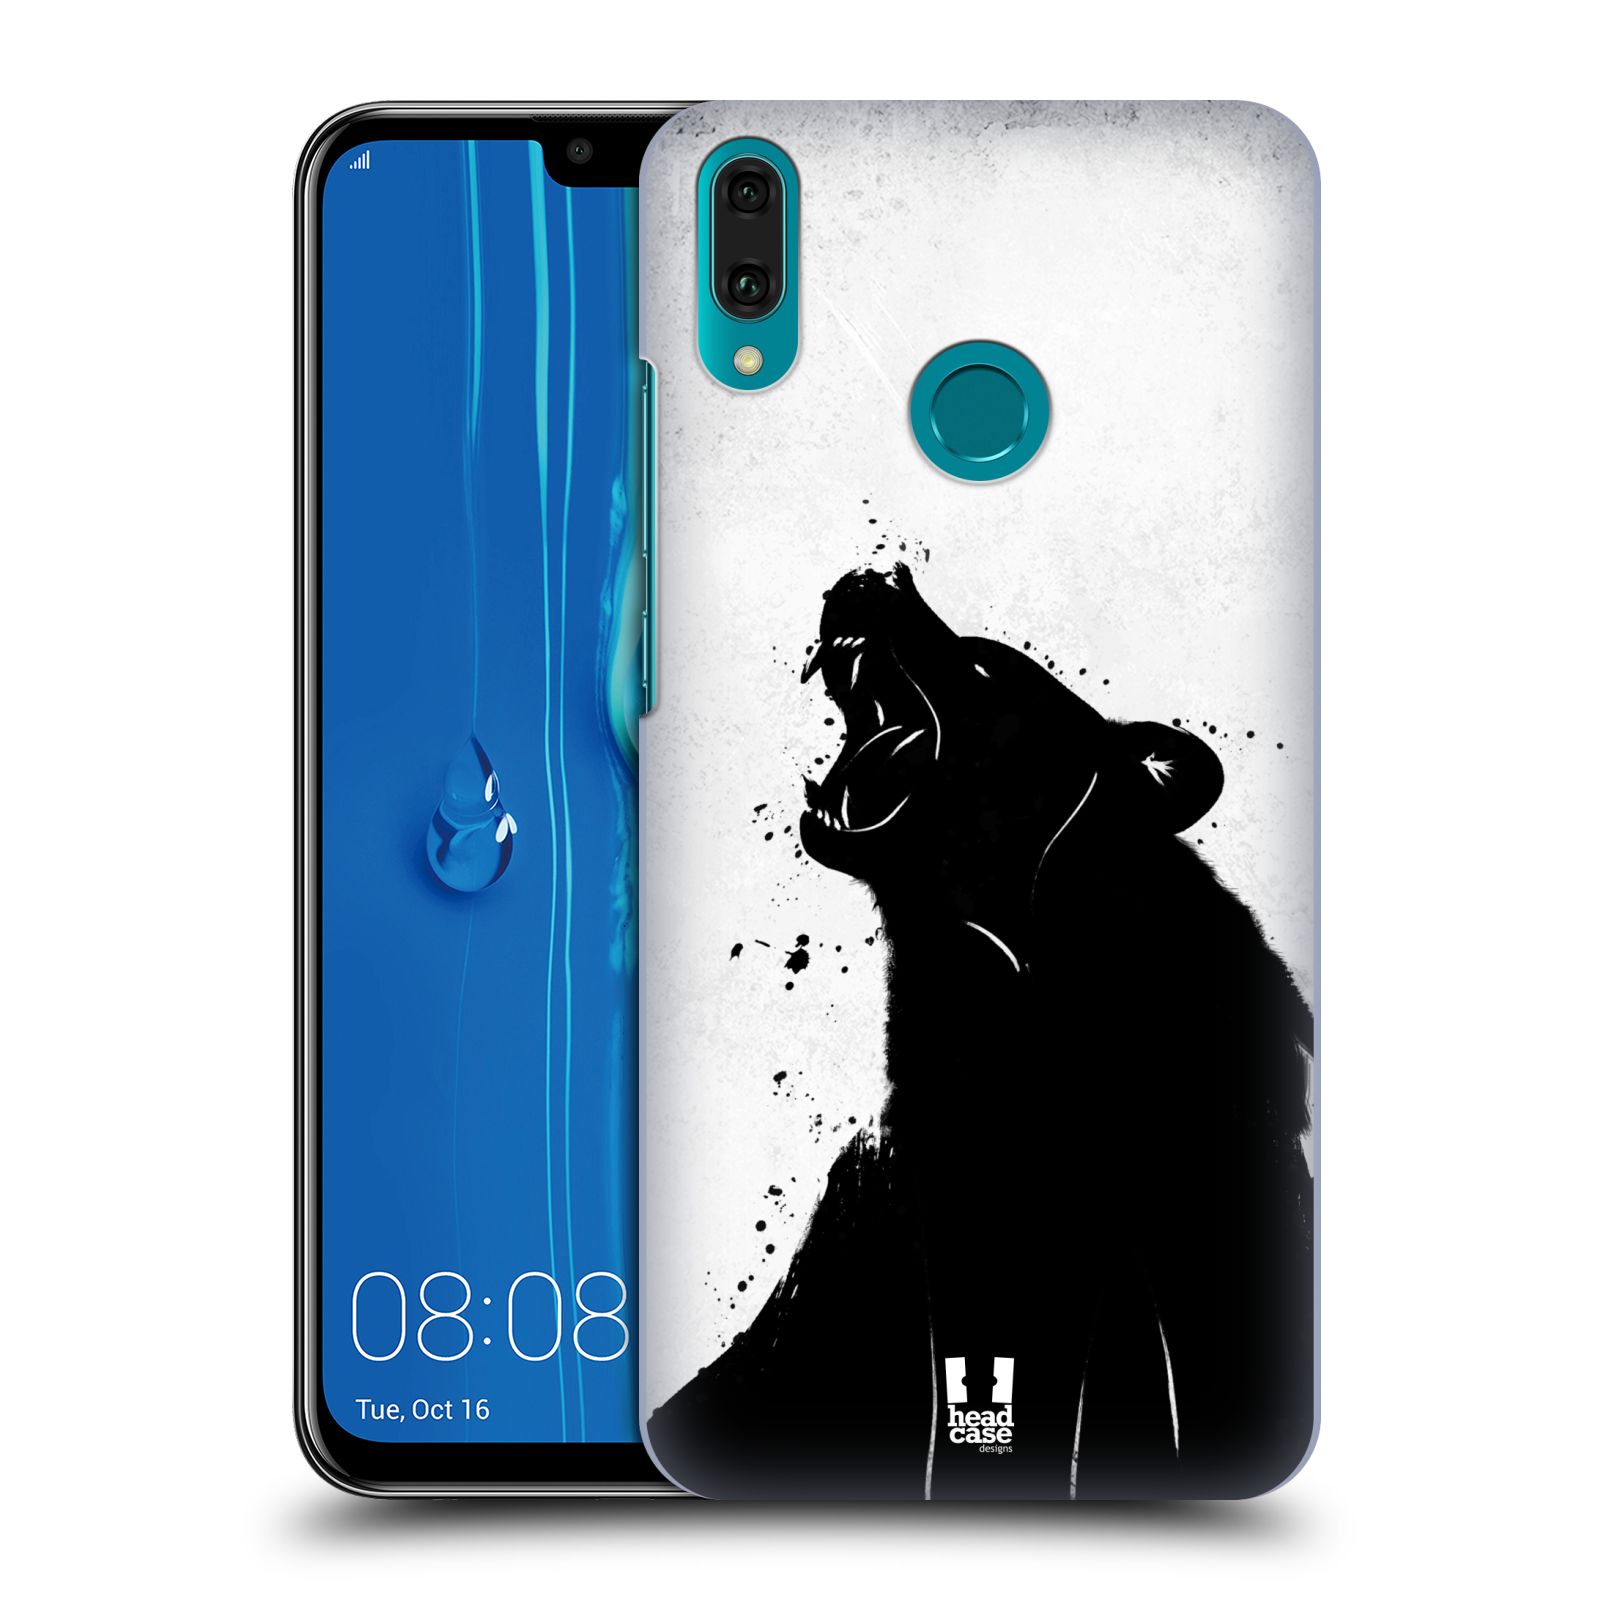 Pouzdro na mobil Huawei Y9 2019 - HEAD CASE - vzor Kresba tuš zvíře medvěd